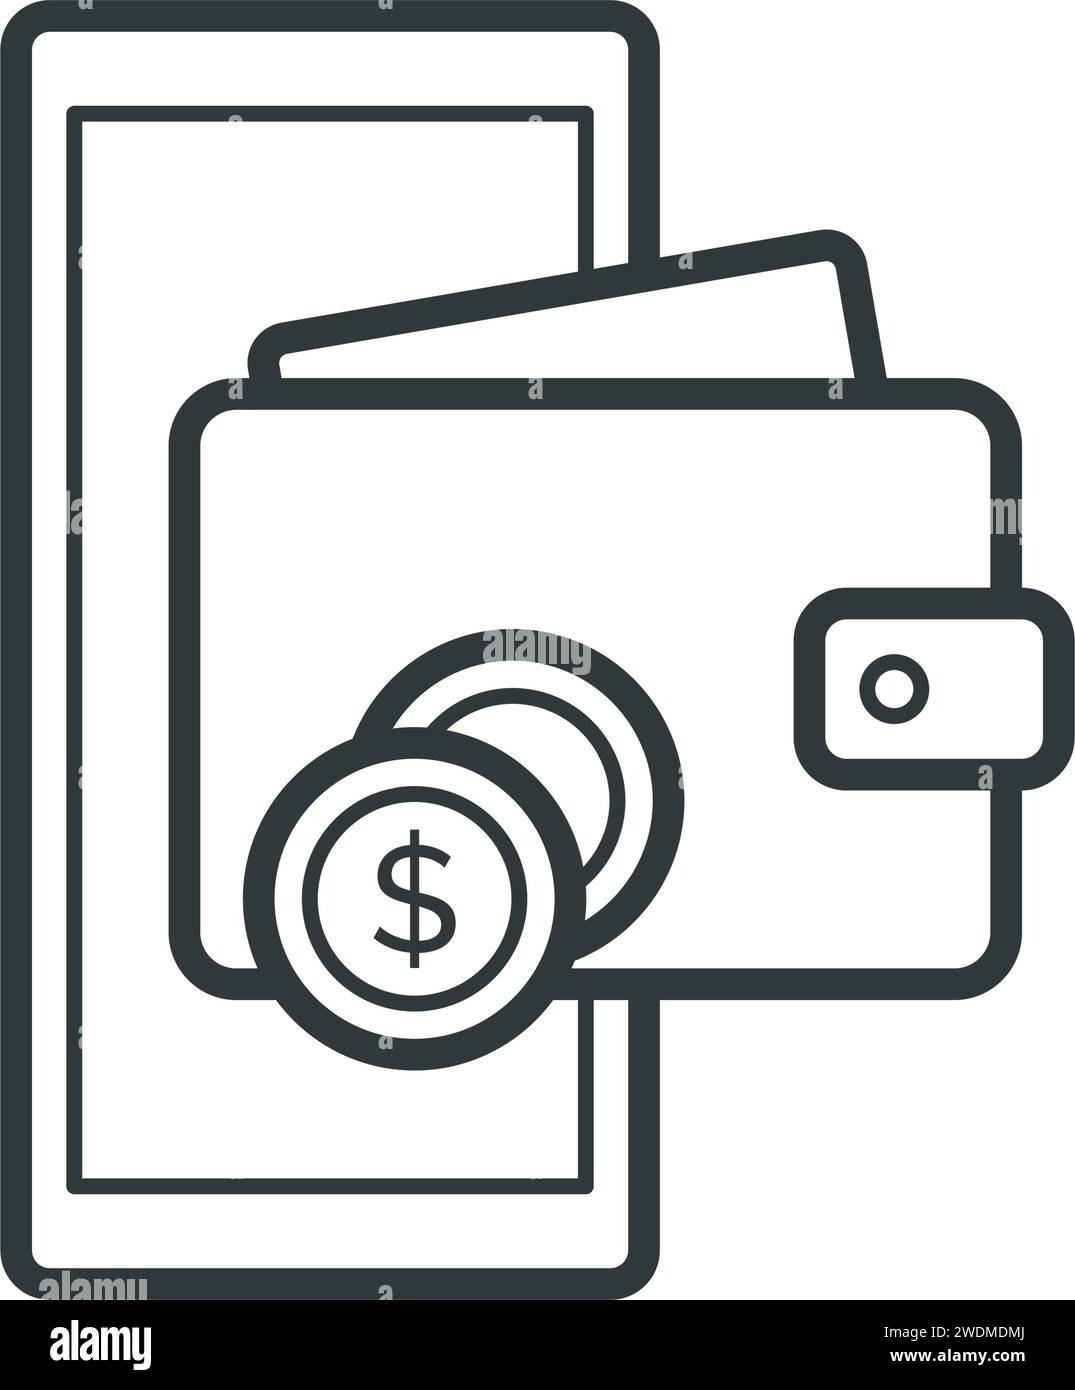 Digitale Geldbörse-App auf Smartphone, elektronische Transaktionen und digitales Währungskonzept, isoliertes Symbol Stock Vektor